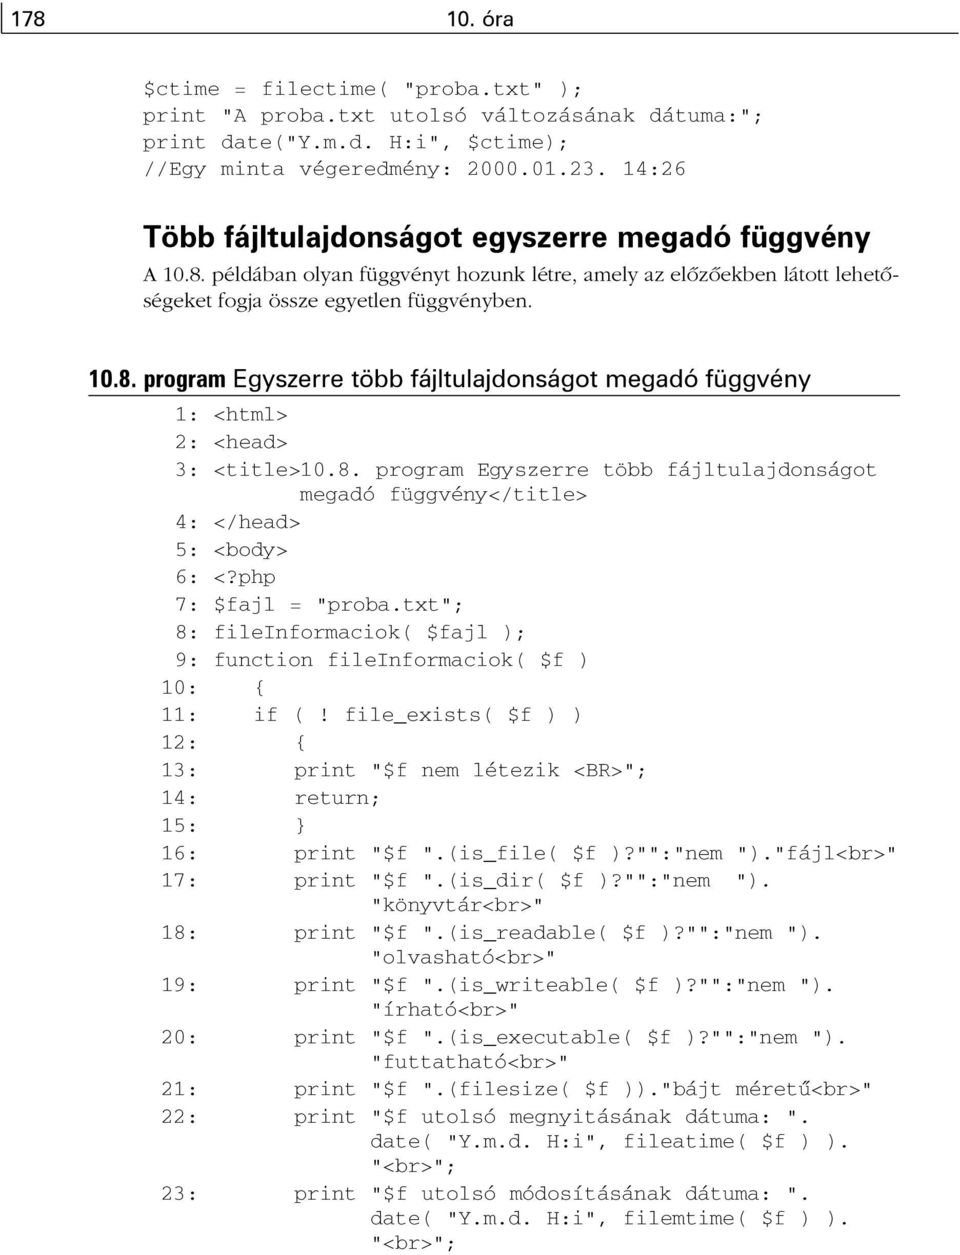 8. program Egyszerre több fájltulajdonságot megadó függvény</title> 4: </head> 5: <body> 6: <?php 7: $fajl = "proba.txt"; 8: fileinformaciok( $fajl ); 9: function fileinformaciok( $f ) 10: { 11: if (!